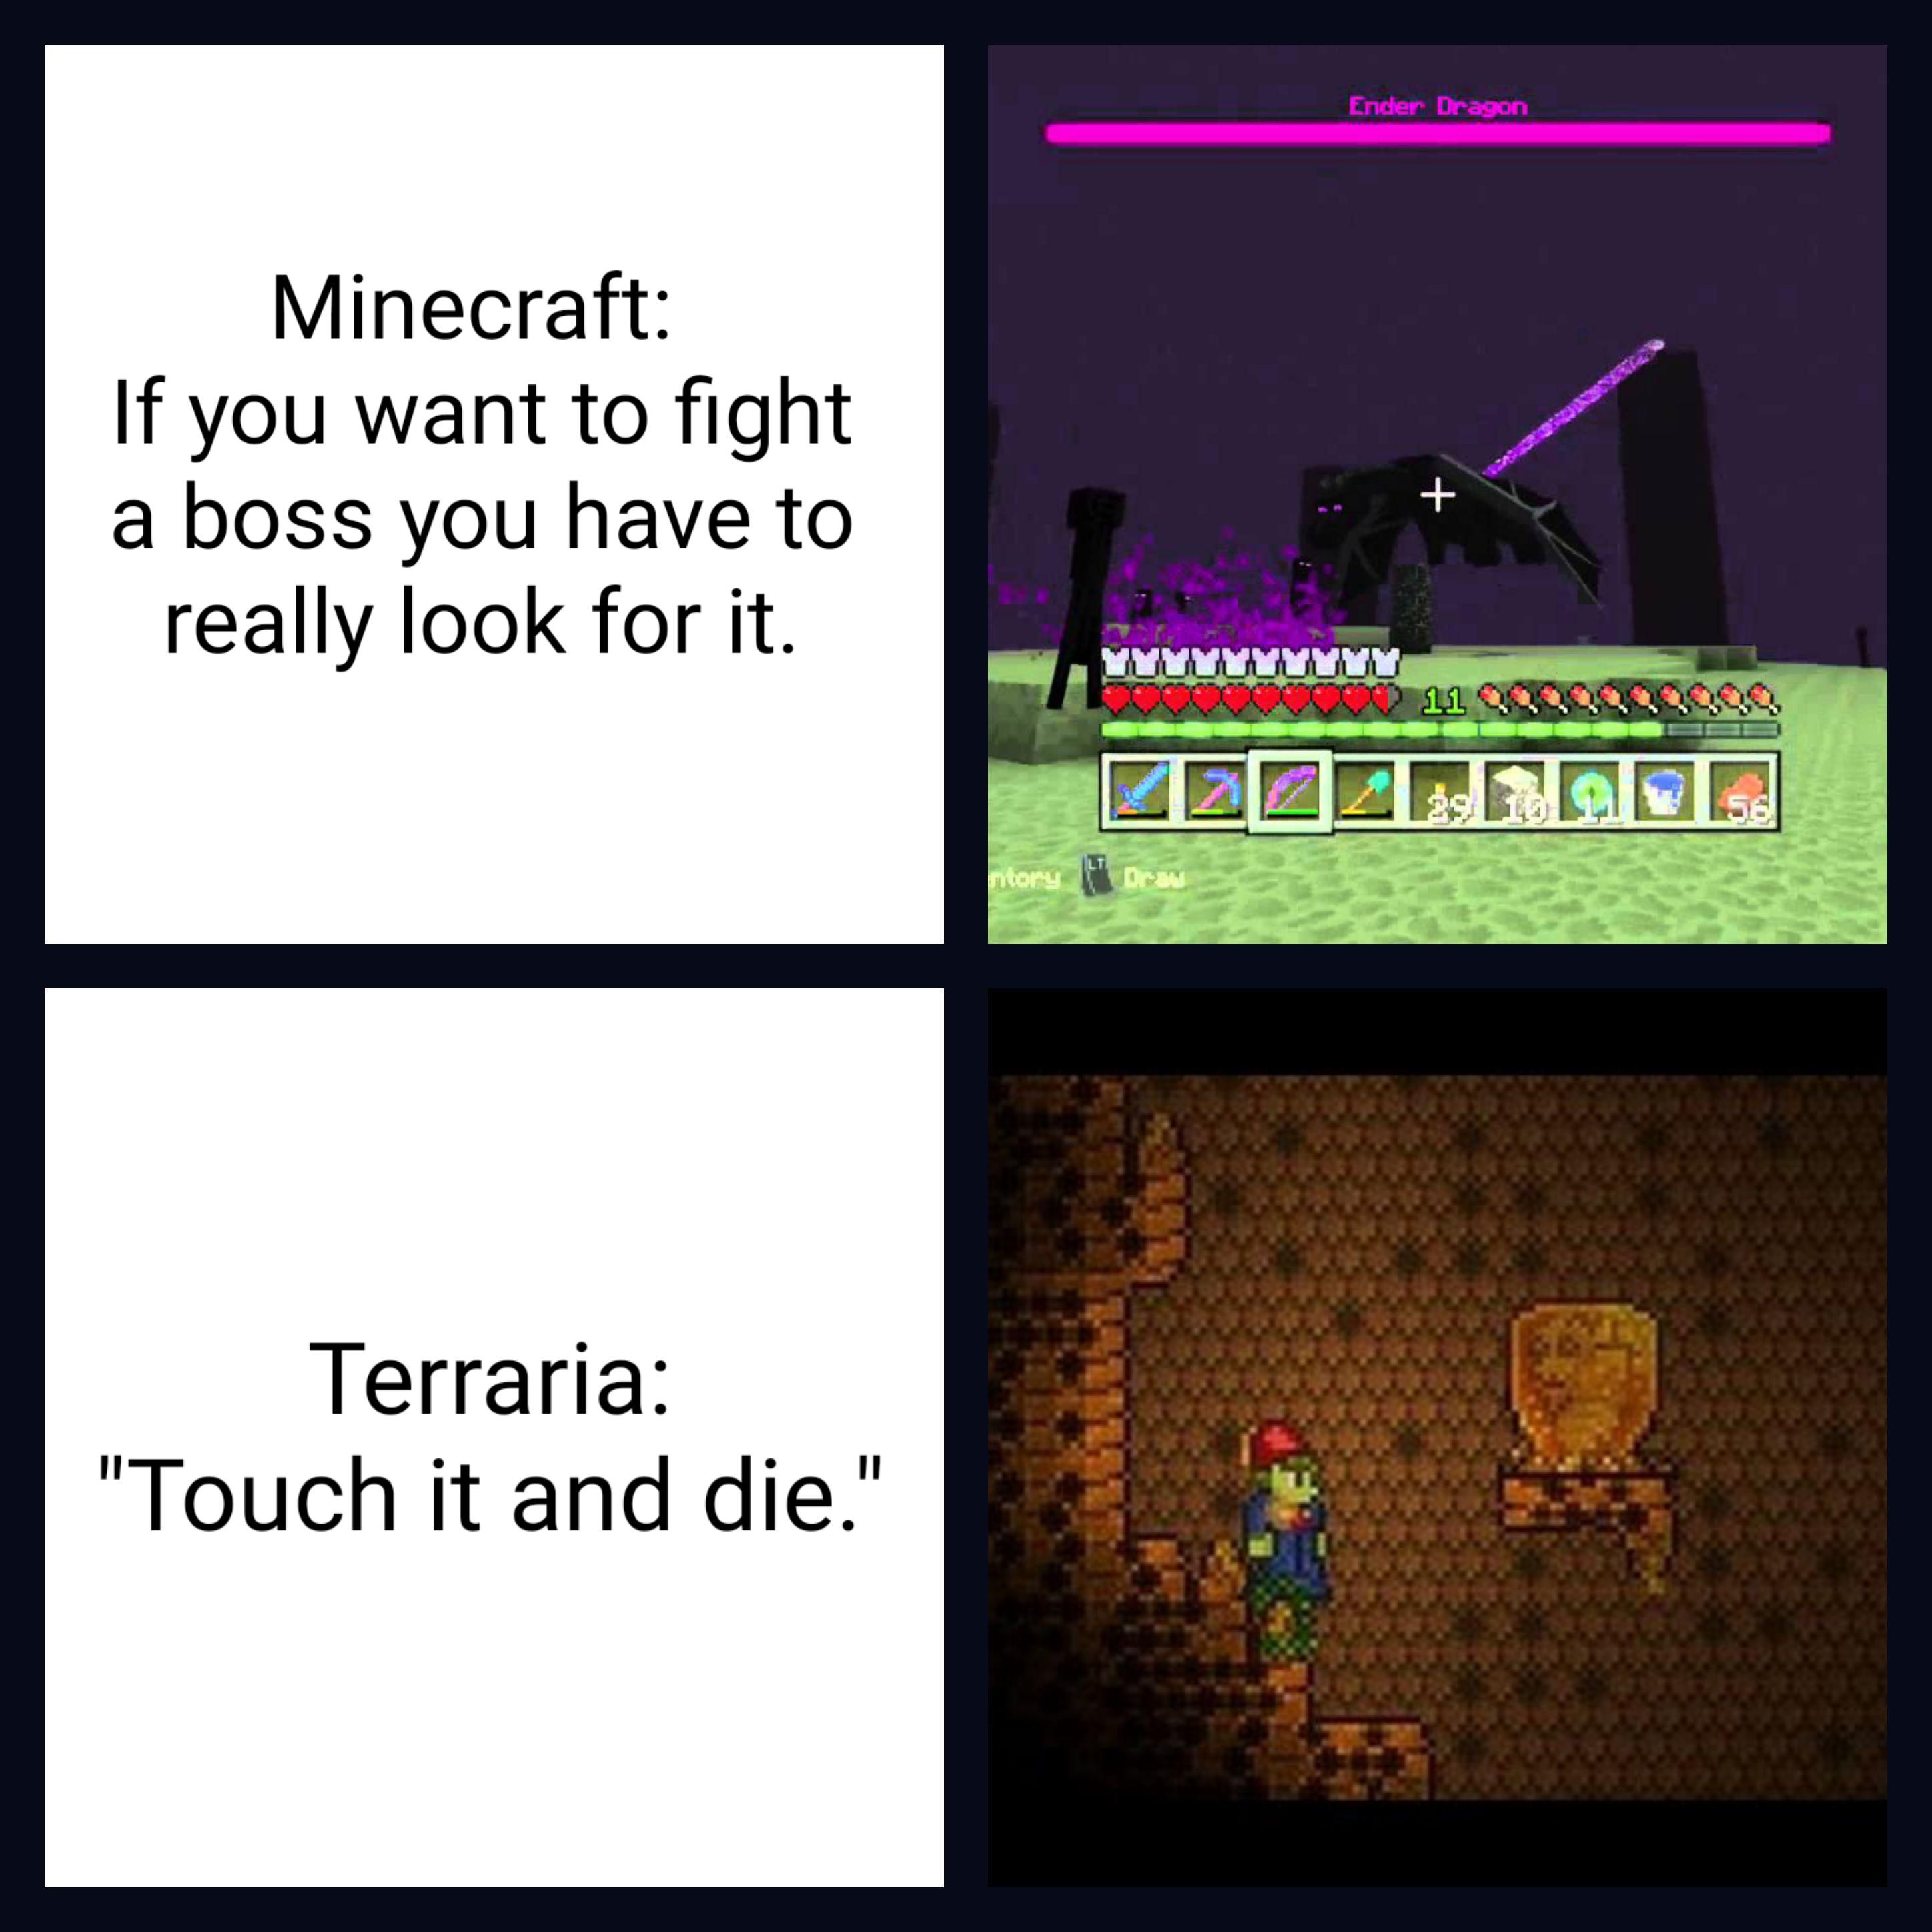 meme comparing minecraft to terraria.